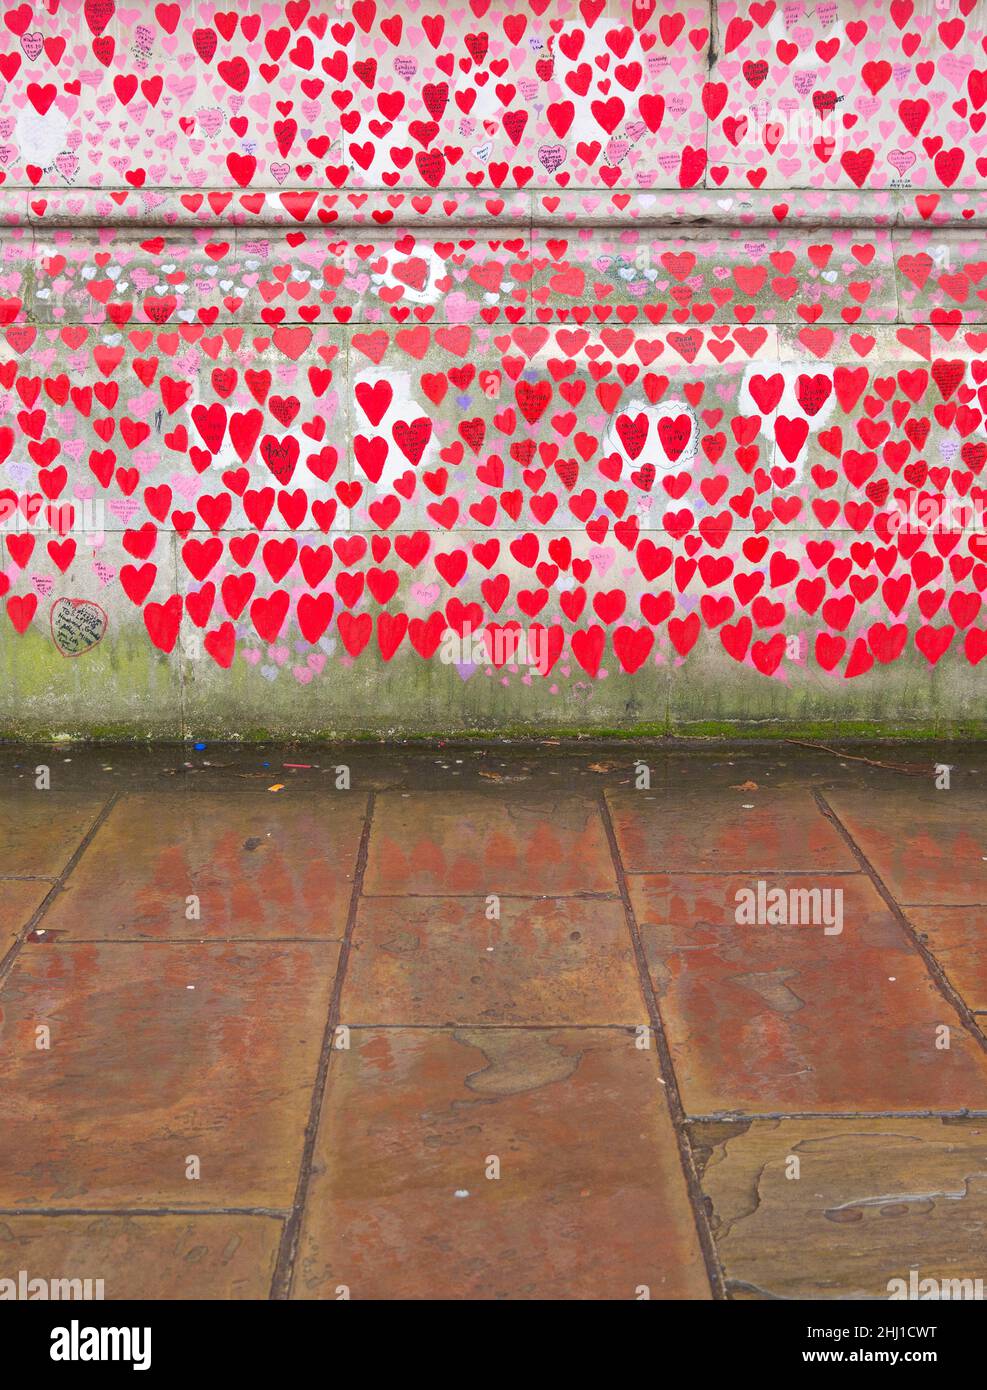 Rote Herzen, die diejenigen repräsentieren, die an Covid-19 gestorben sind, spiegeln sich an der National Covid Memorial Wall auf dem nassen Bürgersteig in London wider. Stockfoto